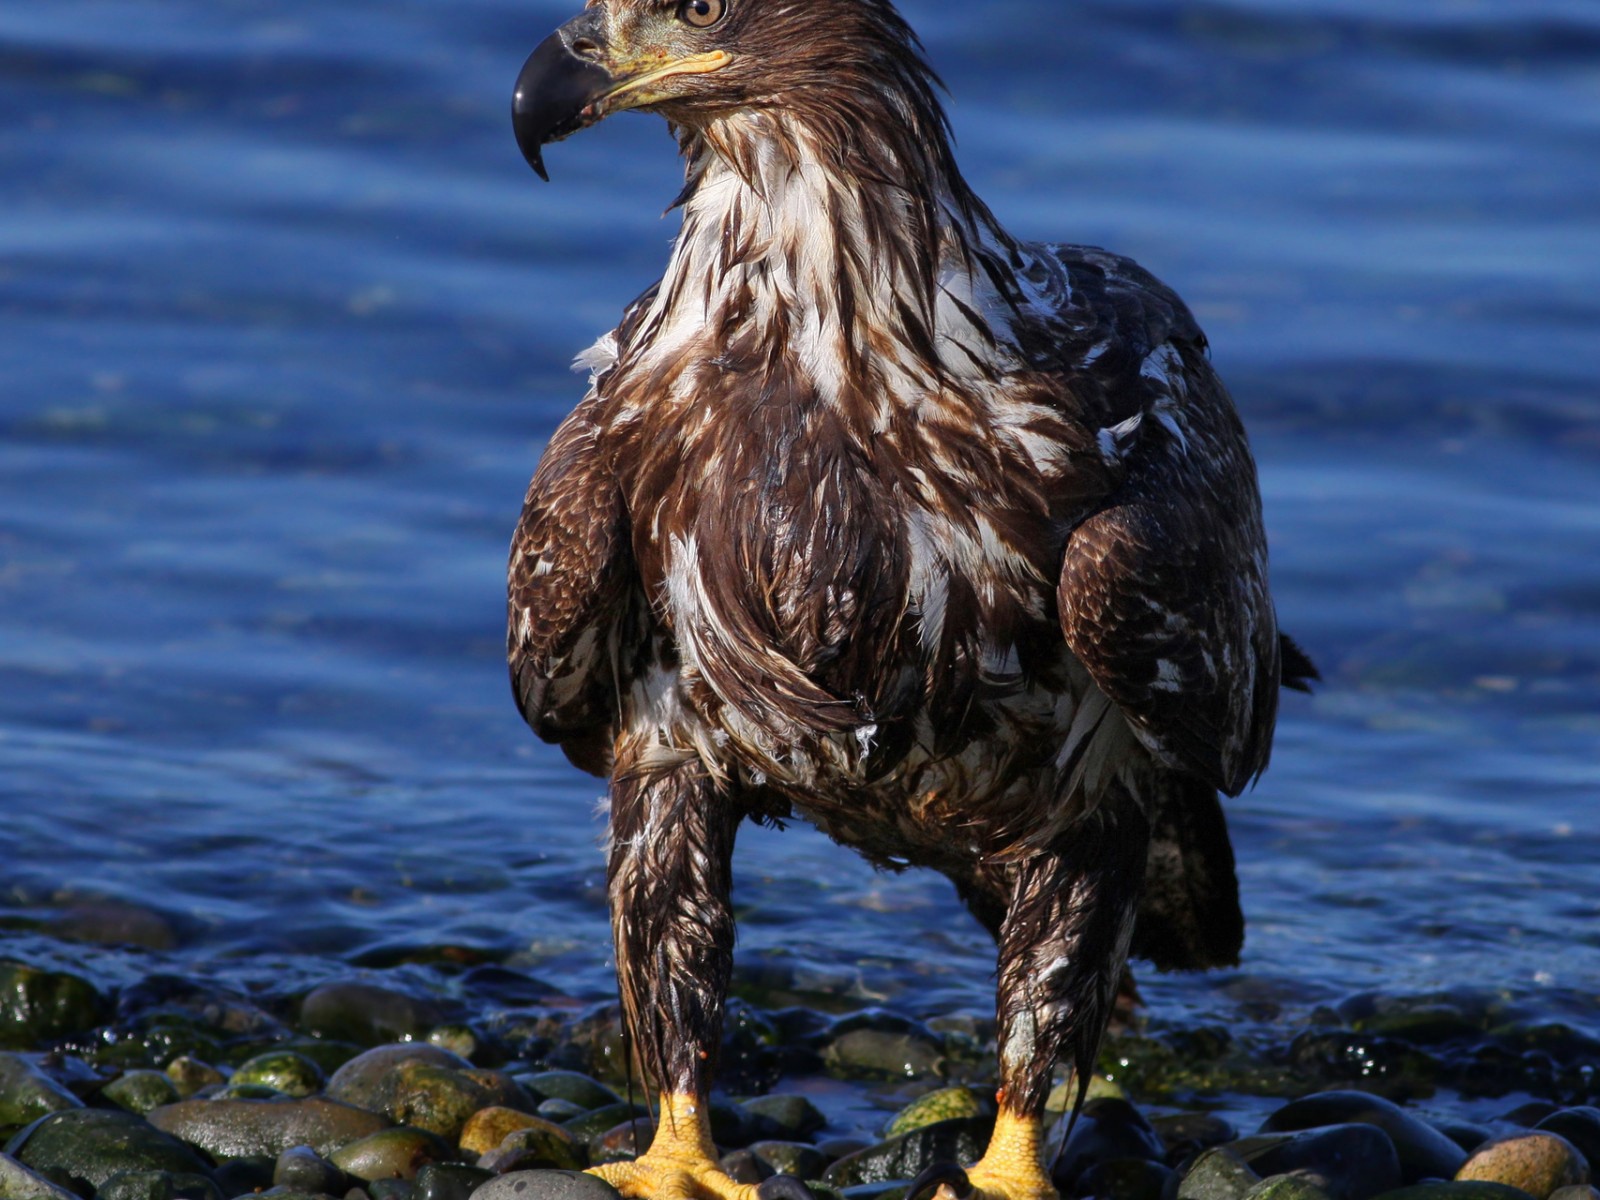 Eagle on the sea shore